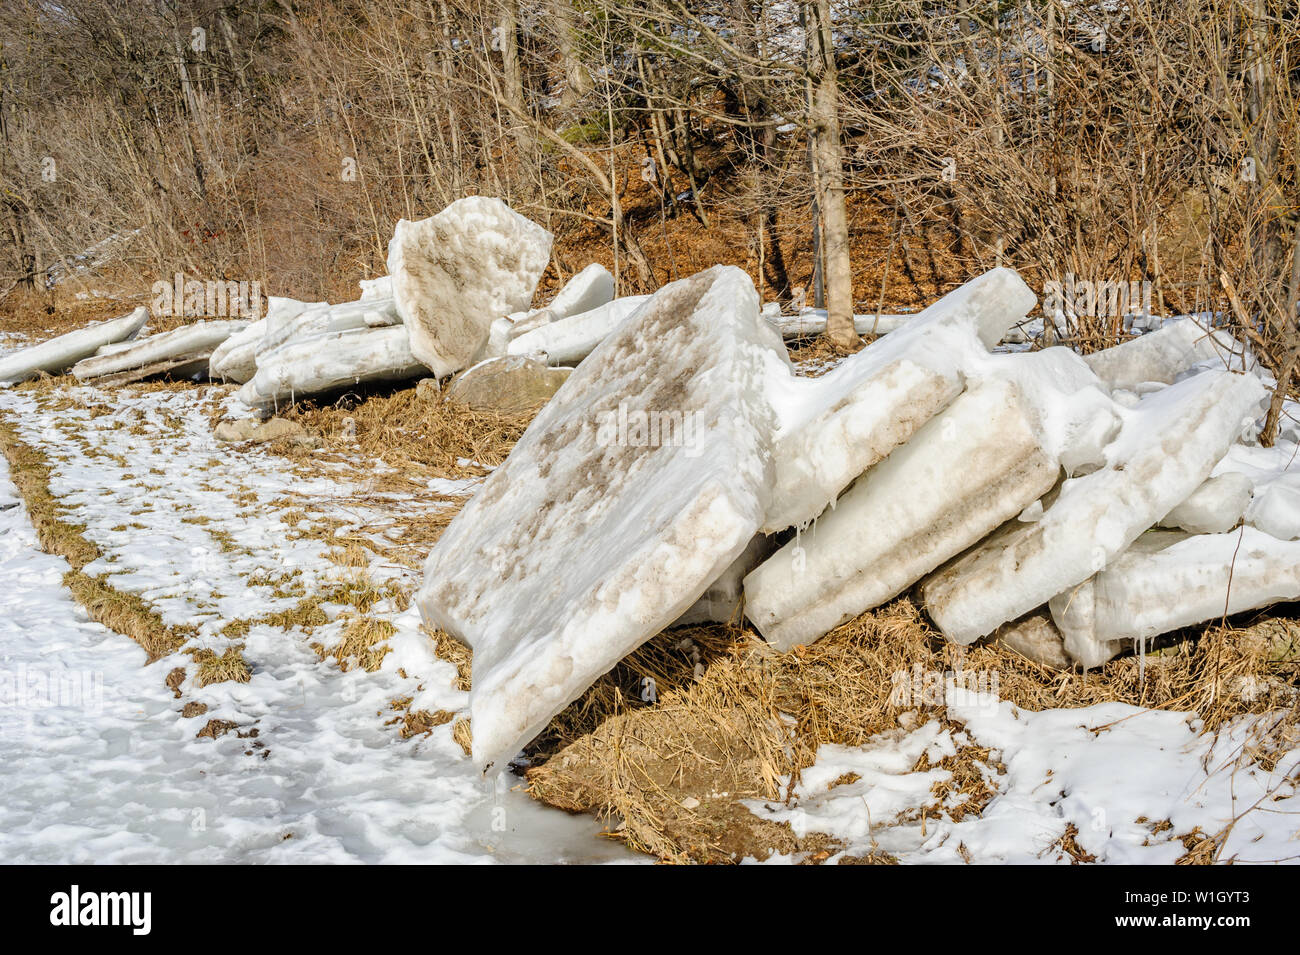 Les dalles épaisses de glace brisée et empilés sur la côte près de arbres en hiver. Banque D'Images